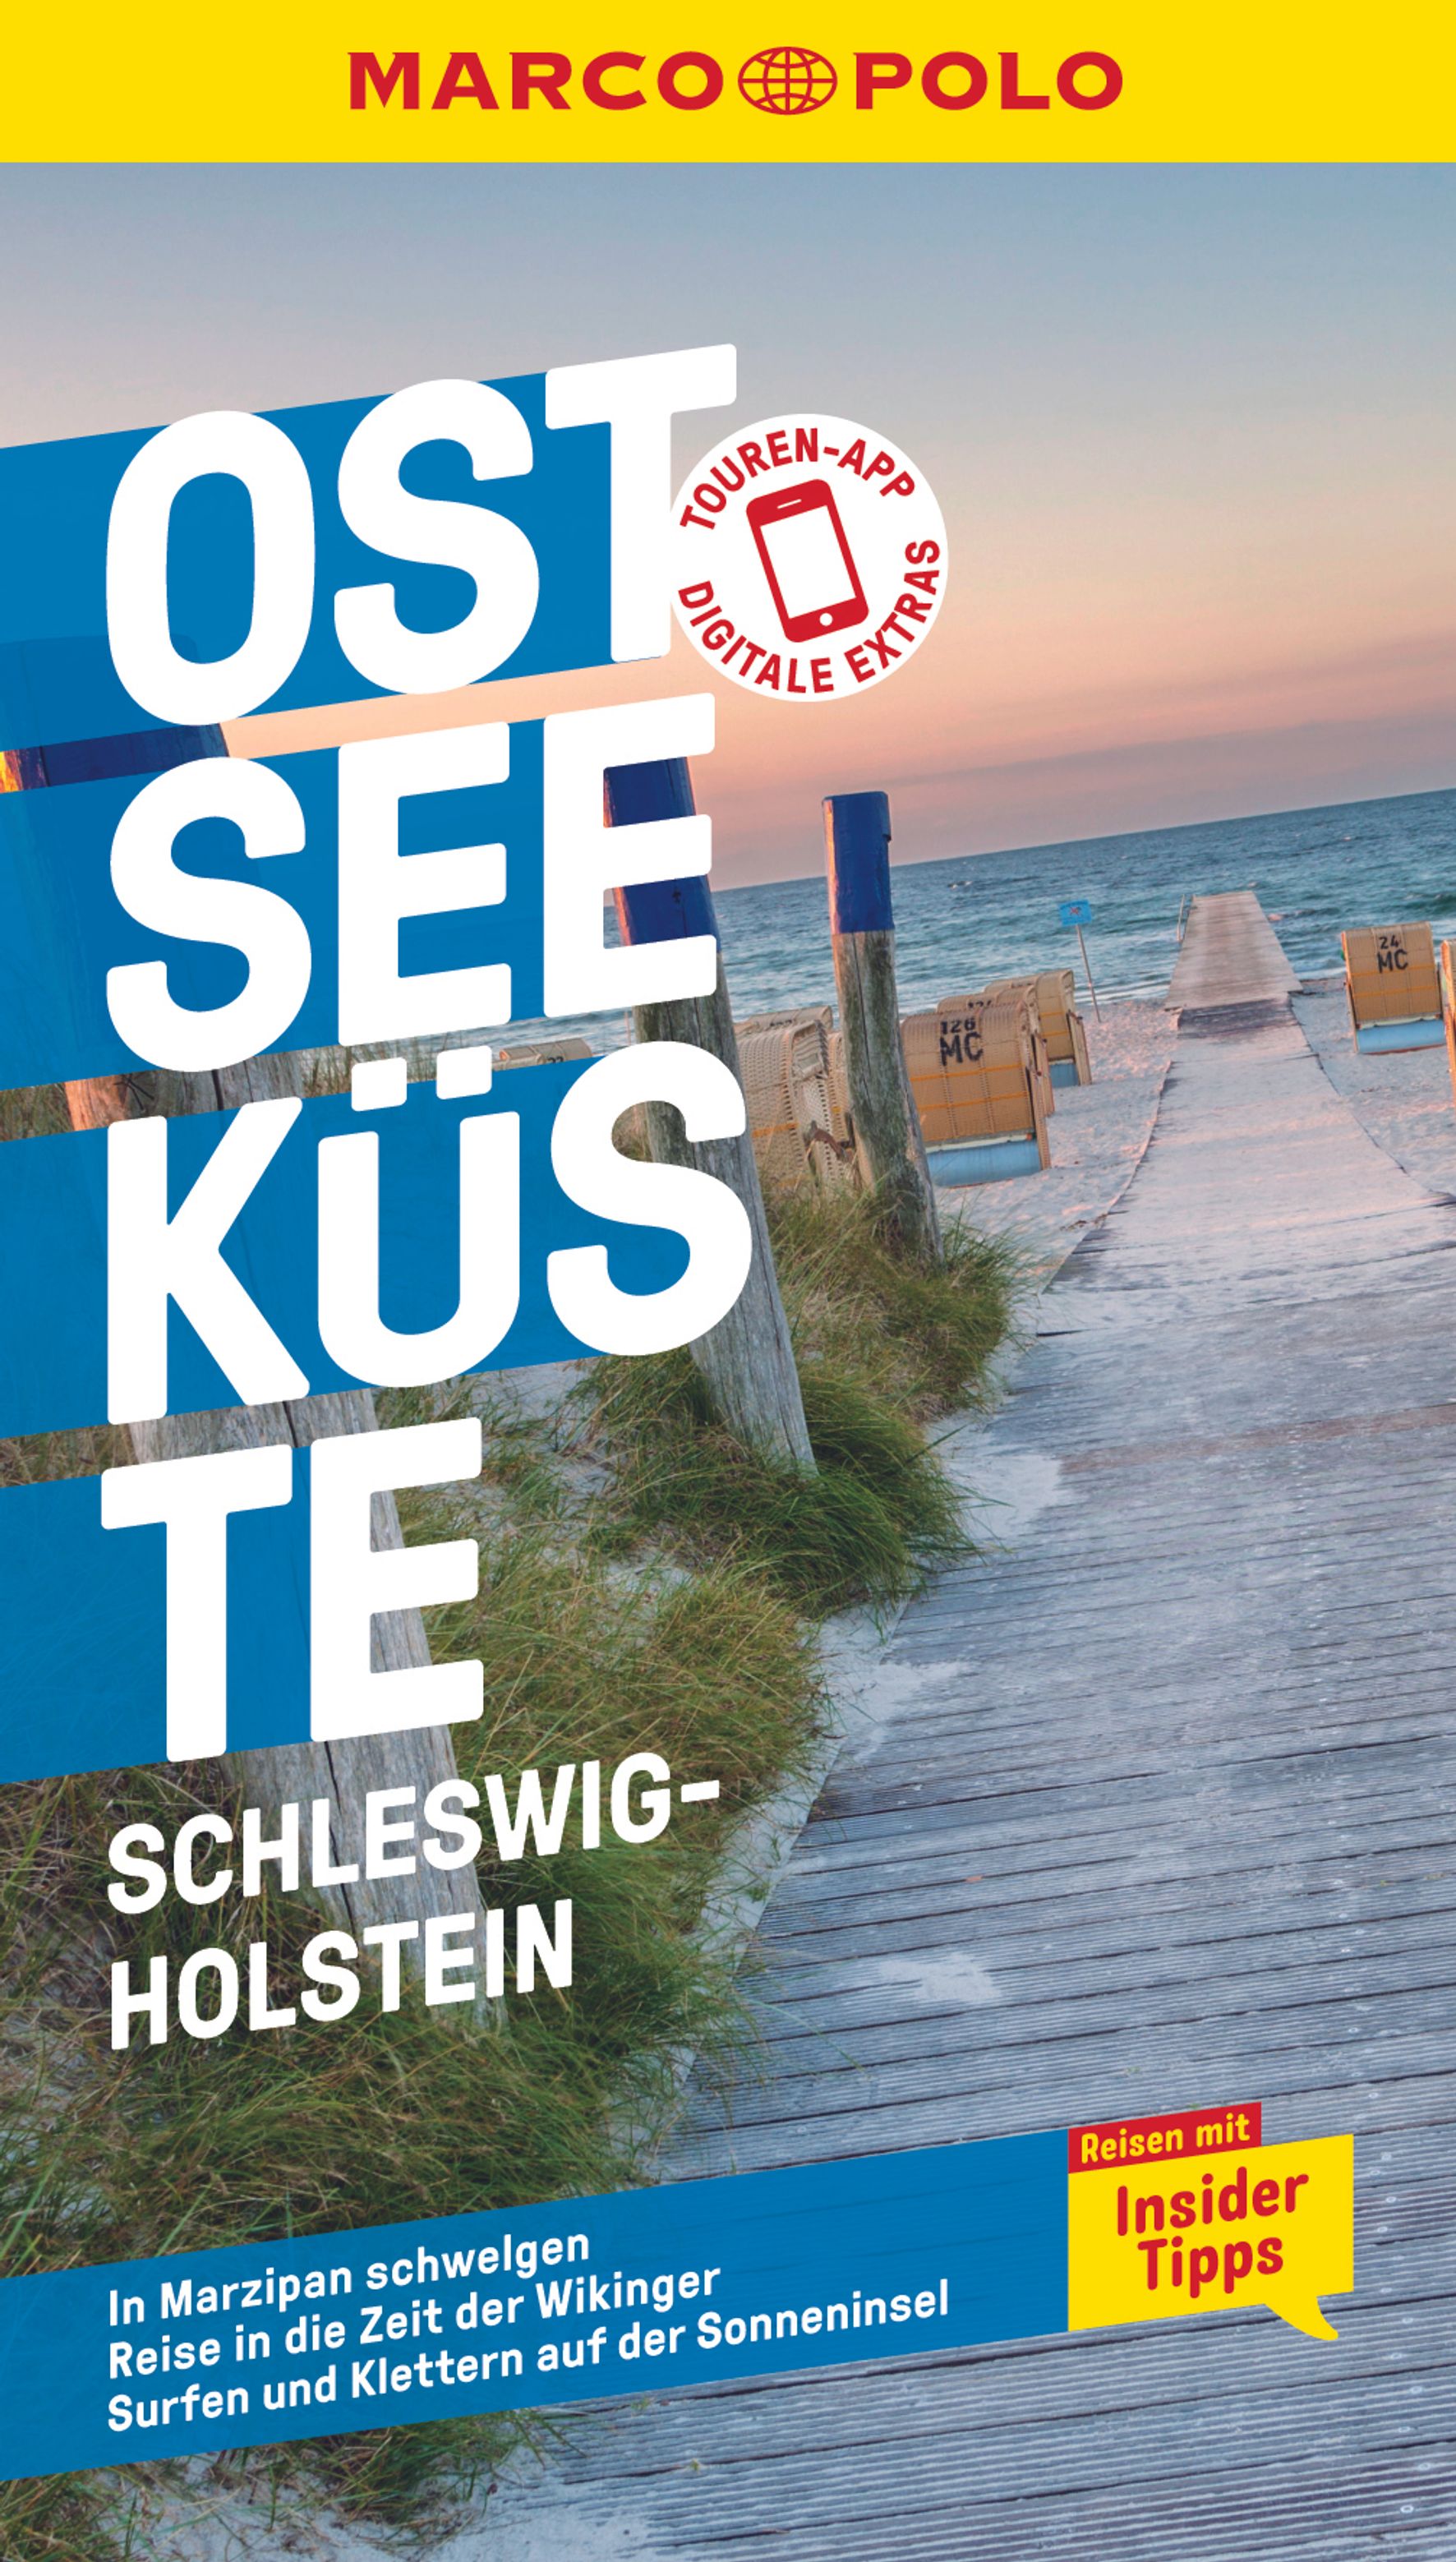 MAIRDUMONT Ostseeküste, Schleswig-Holstein (eBook)